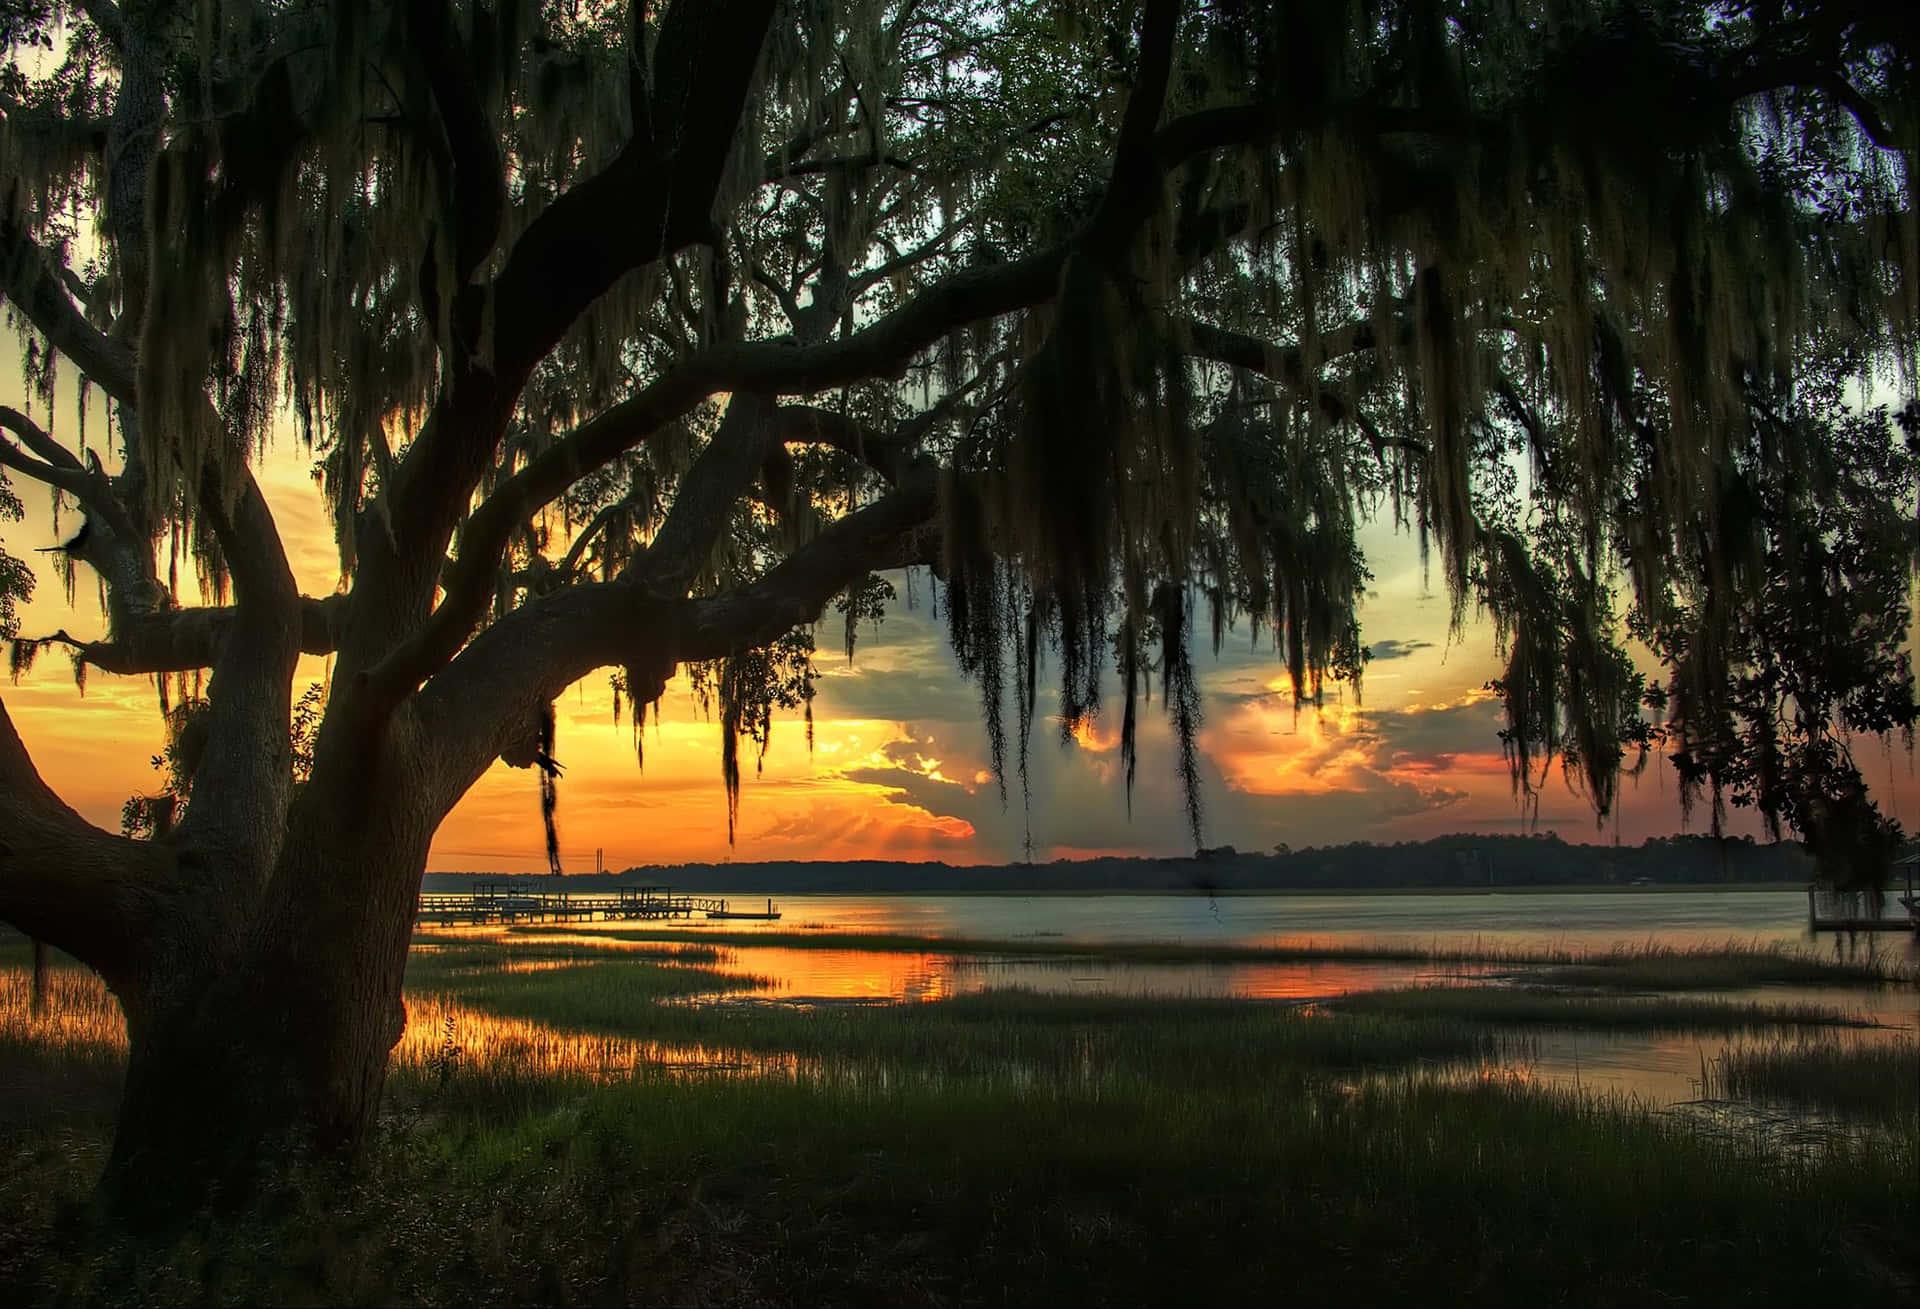 The sun sets over Savannah, Georgia